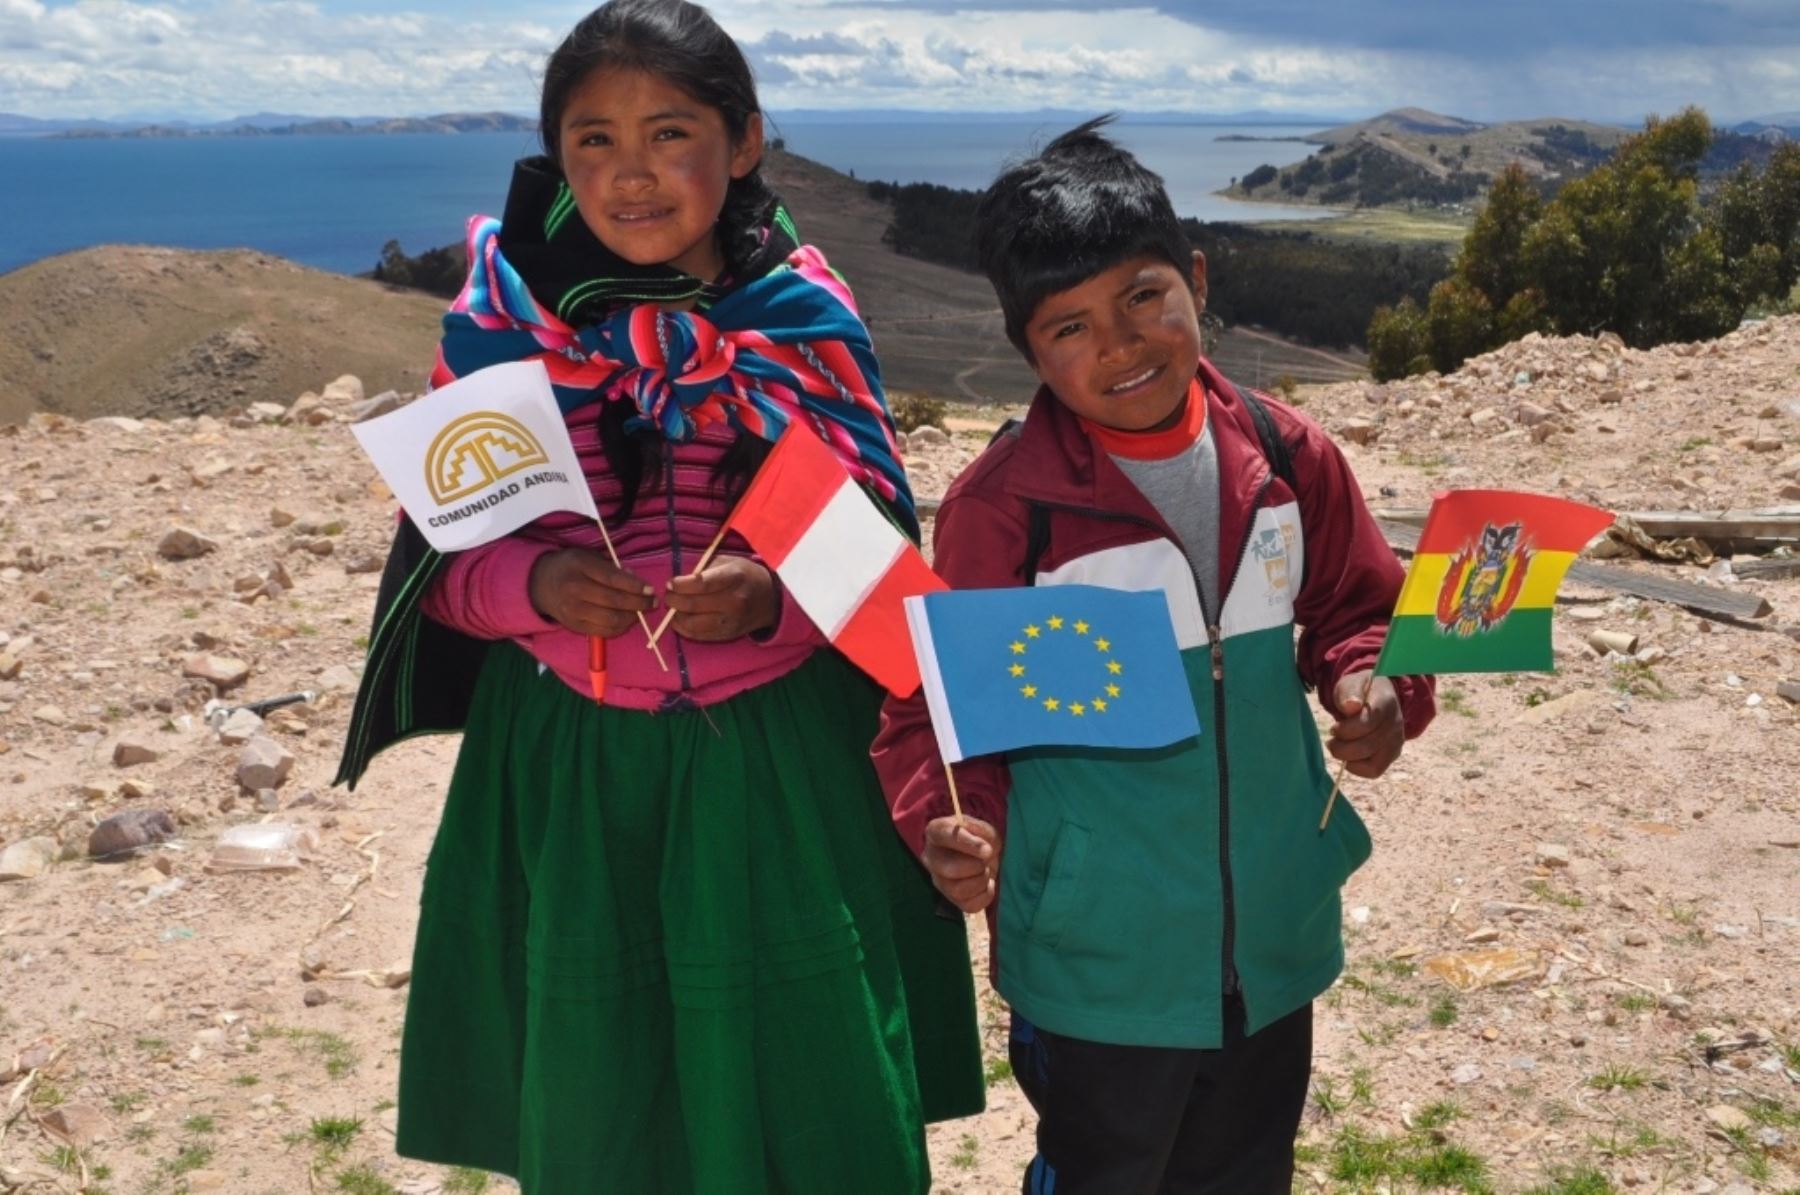 Presentan proyectos en Perú y Bolivia, respaldados por la Unión Europea y Comunidad Andina